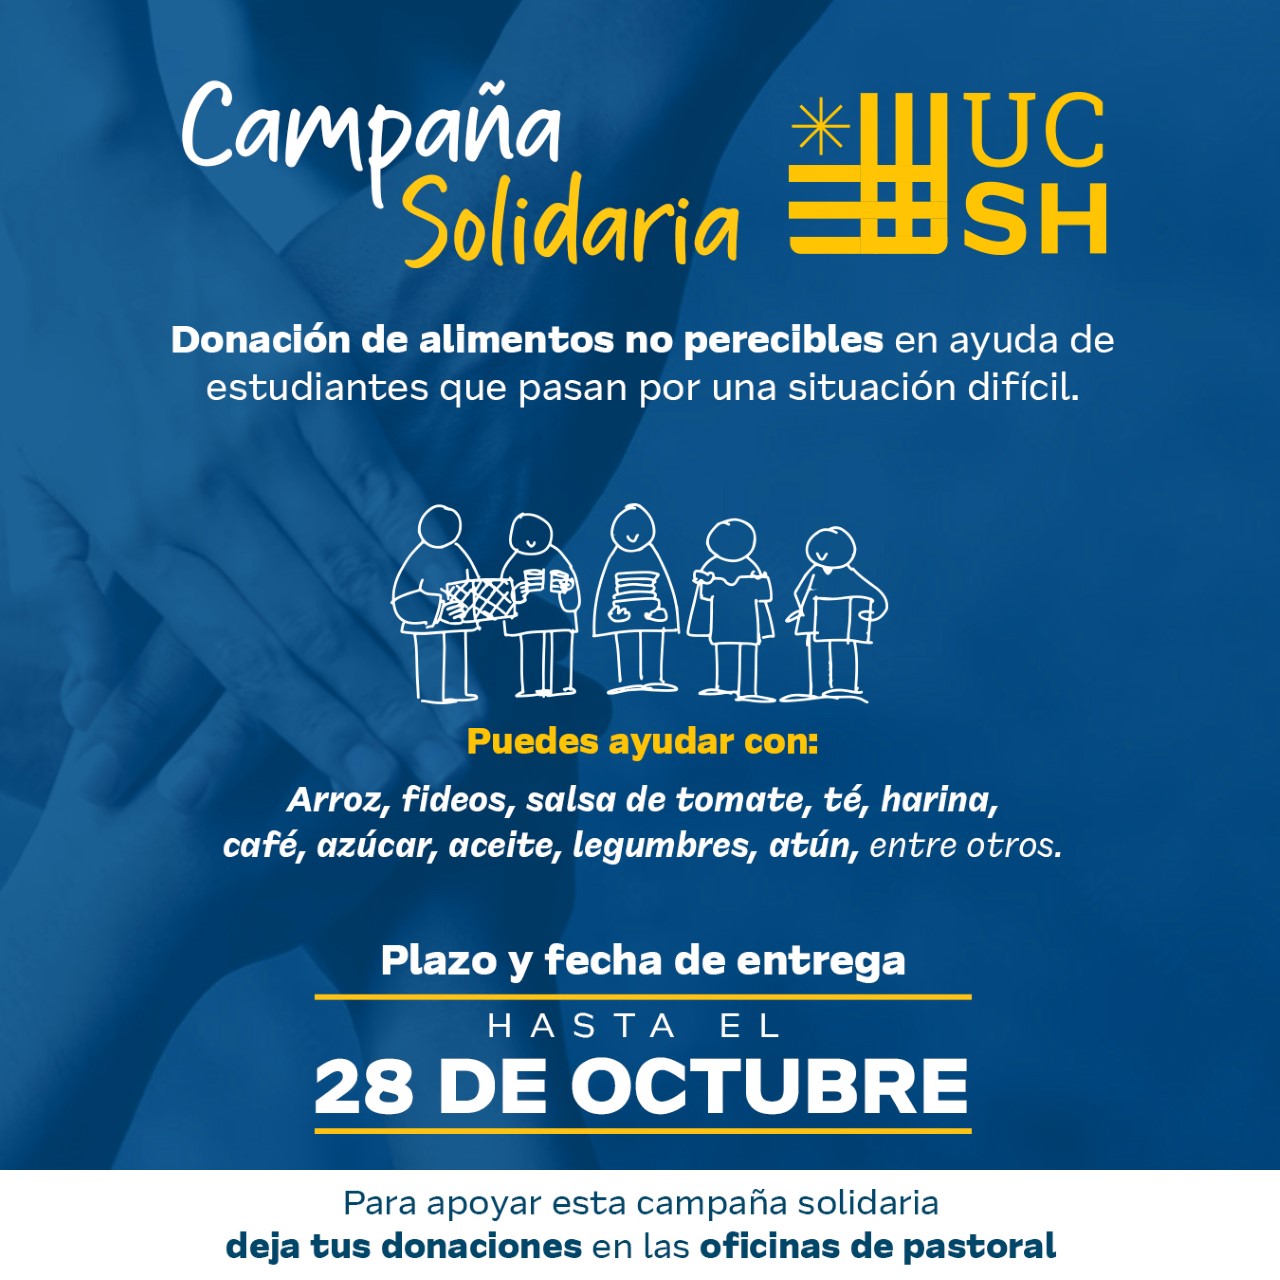 Campaña solidaria UCSH